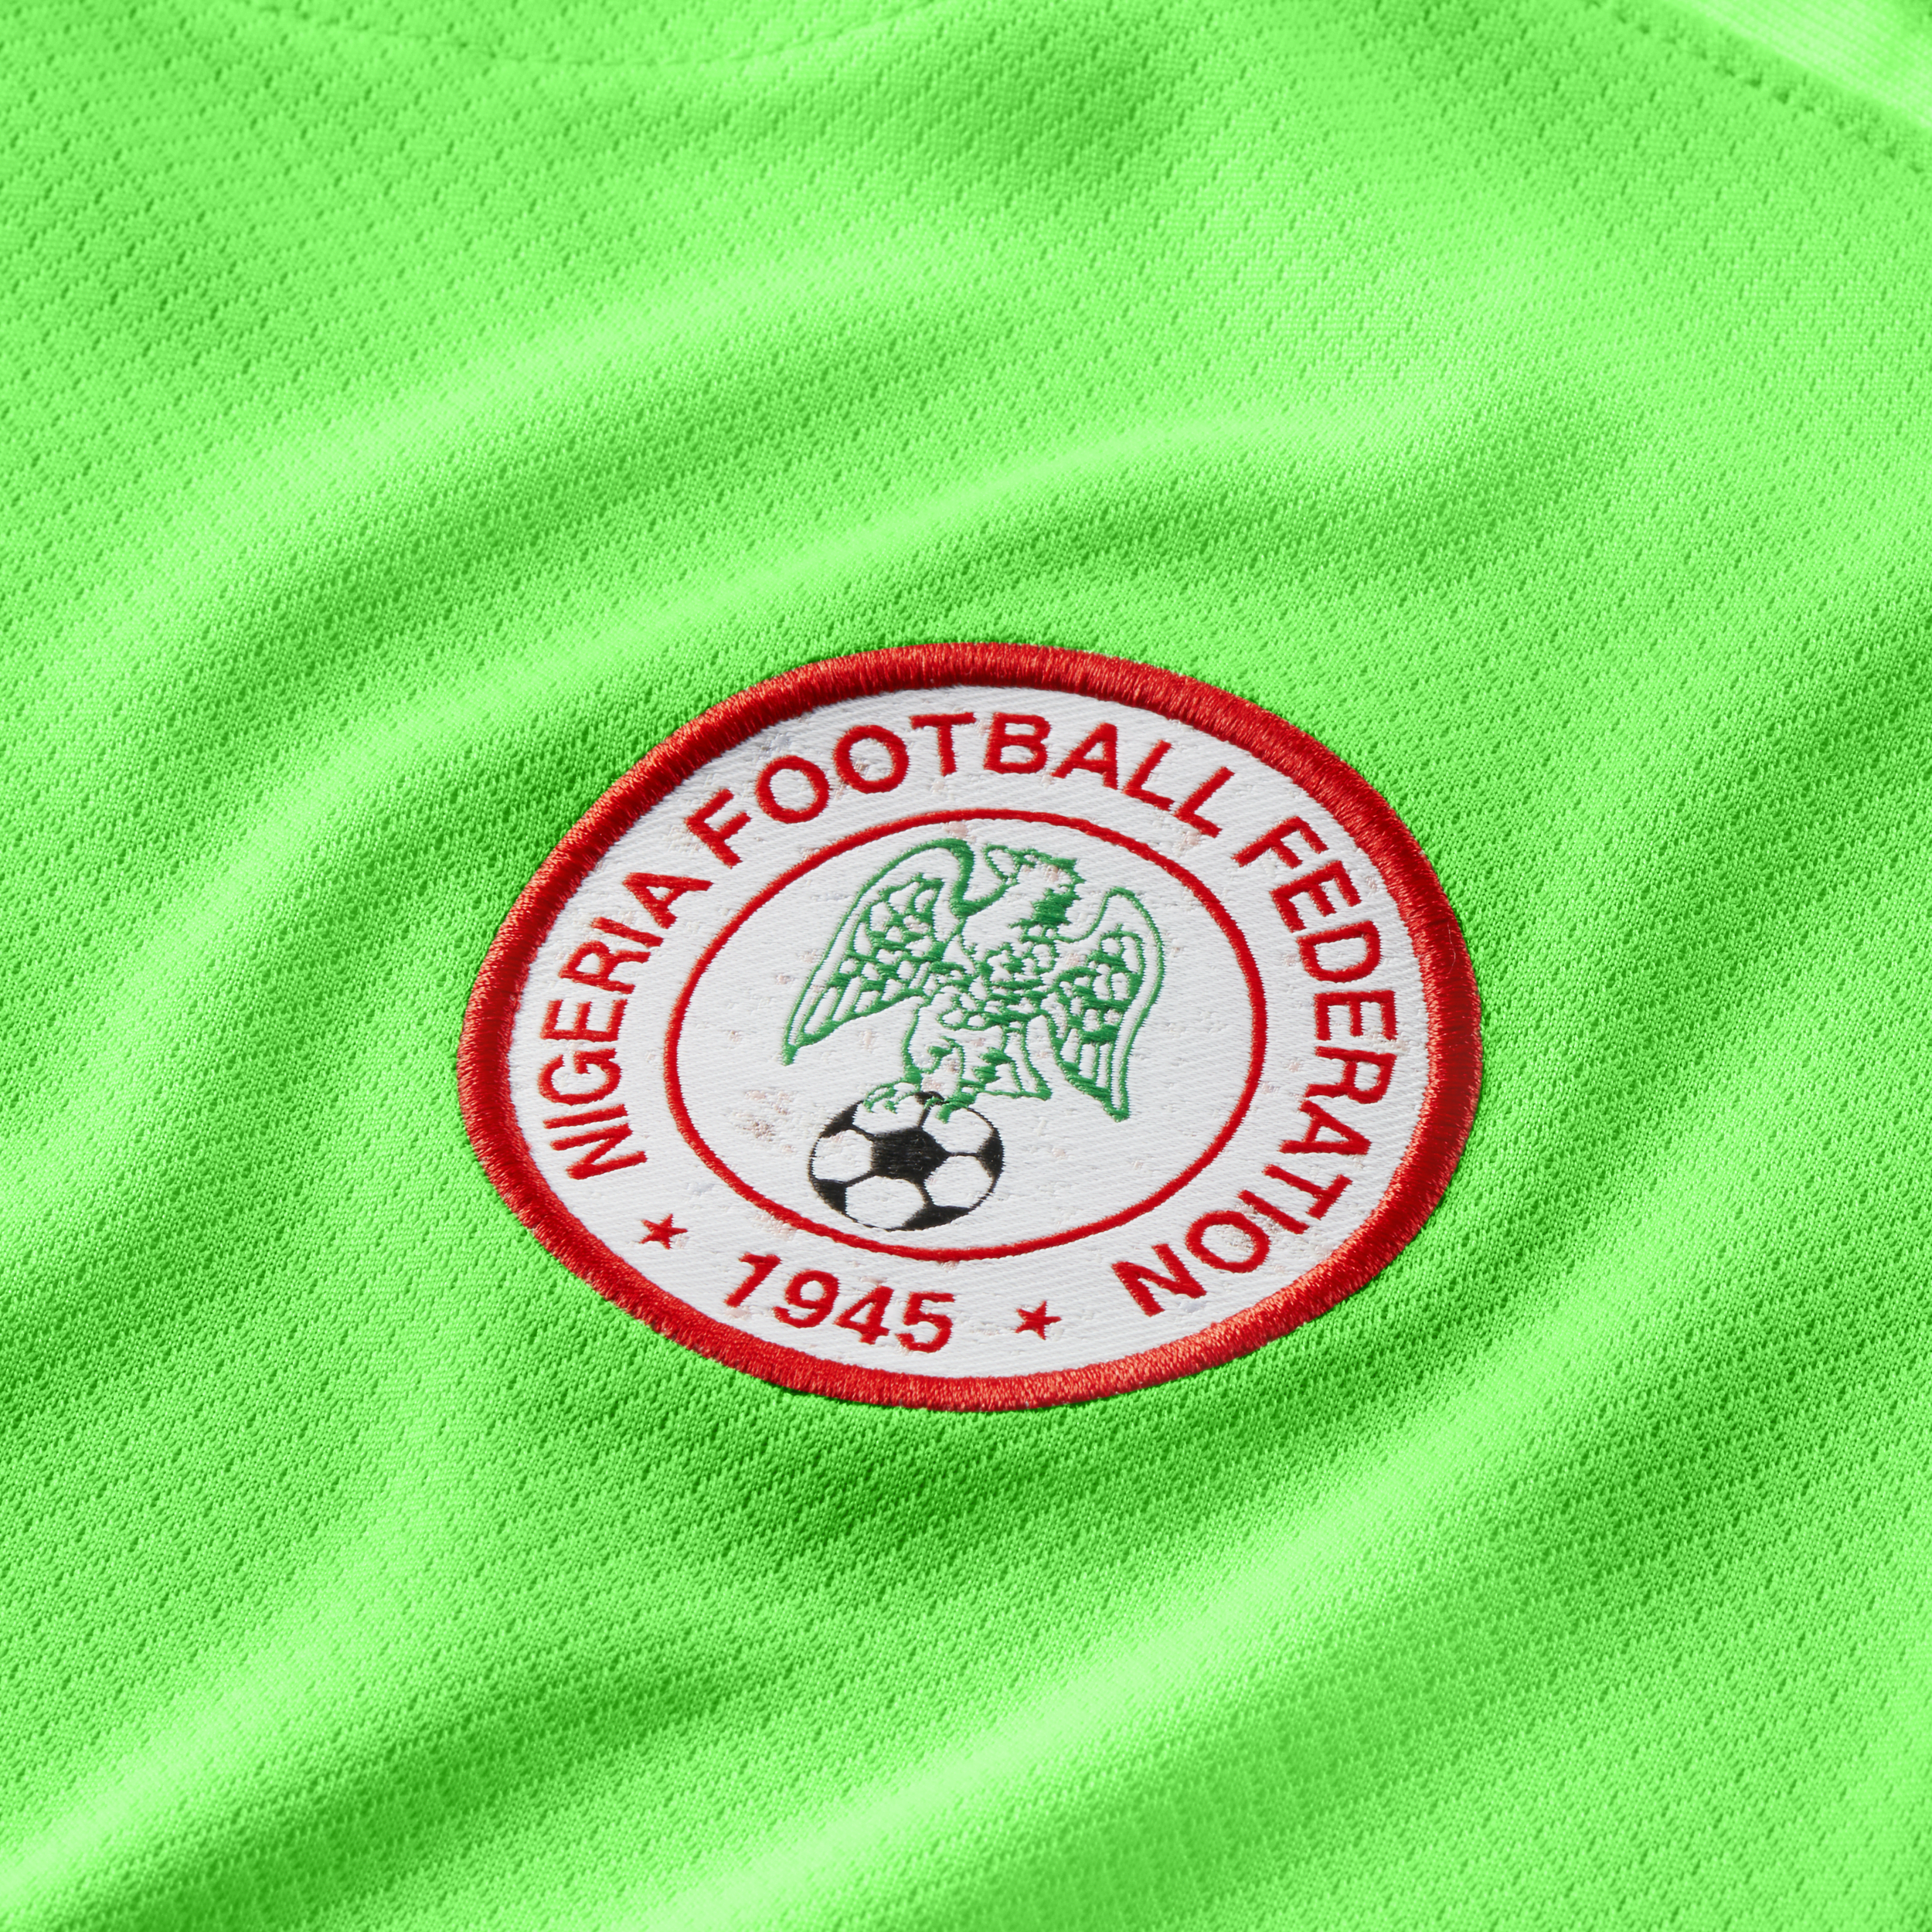 IMC announces new name, logo for Nigerian League - Daily Post Nigeria